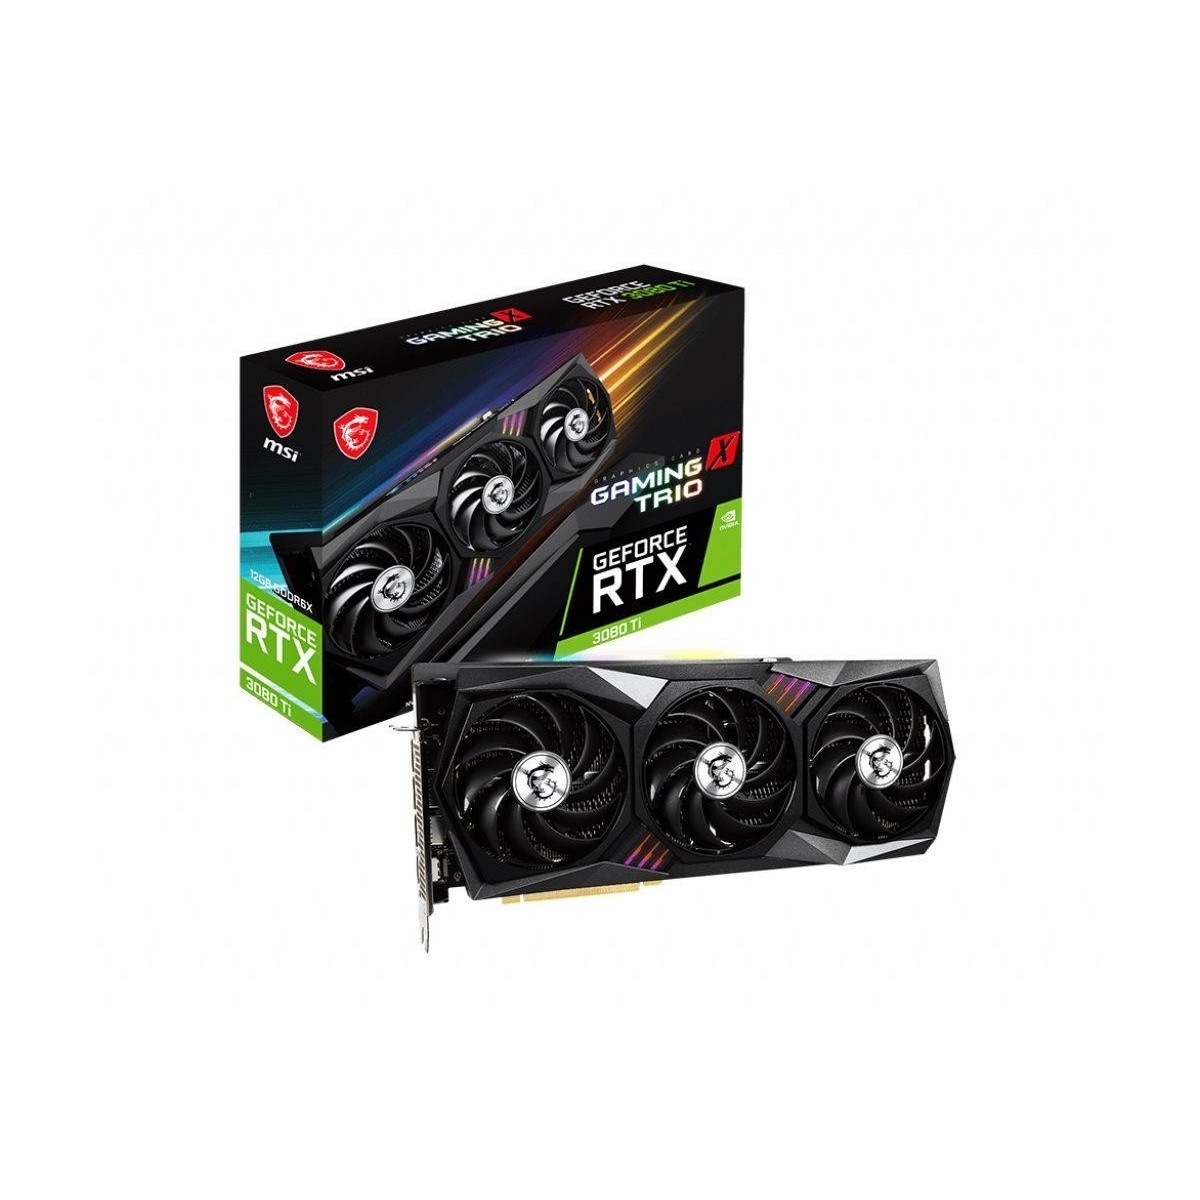 Zestaw karta graficzna MSI GeForce RTX 3080 Ti GAMING X TRIO 12G 12GB + słuchaki, plecak, pluszowy smok i RGB LED